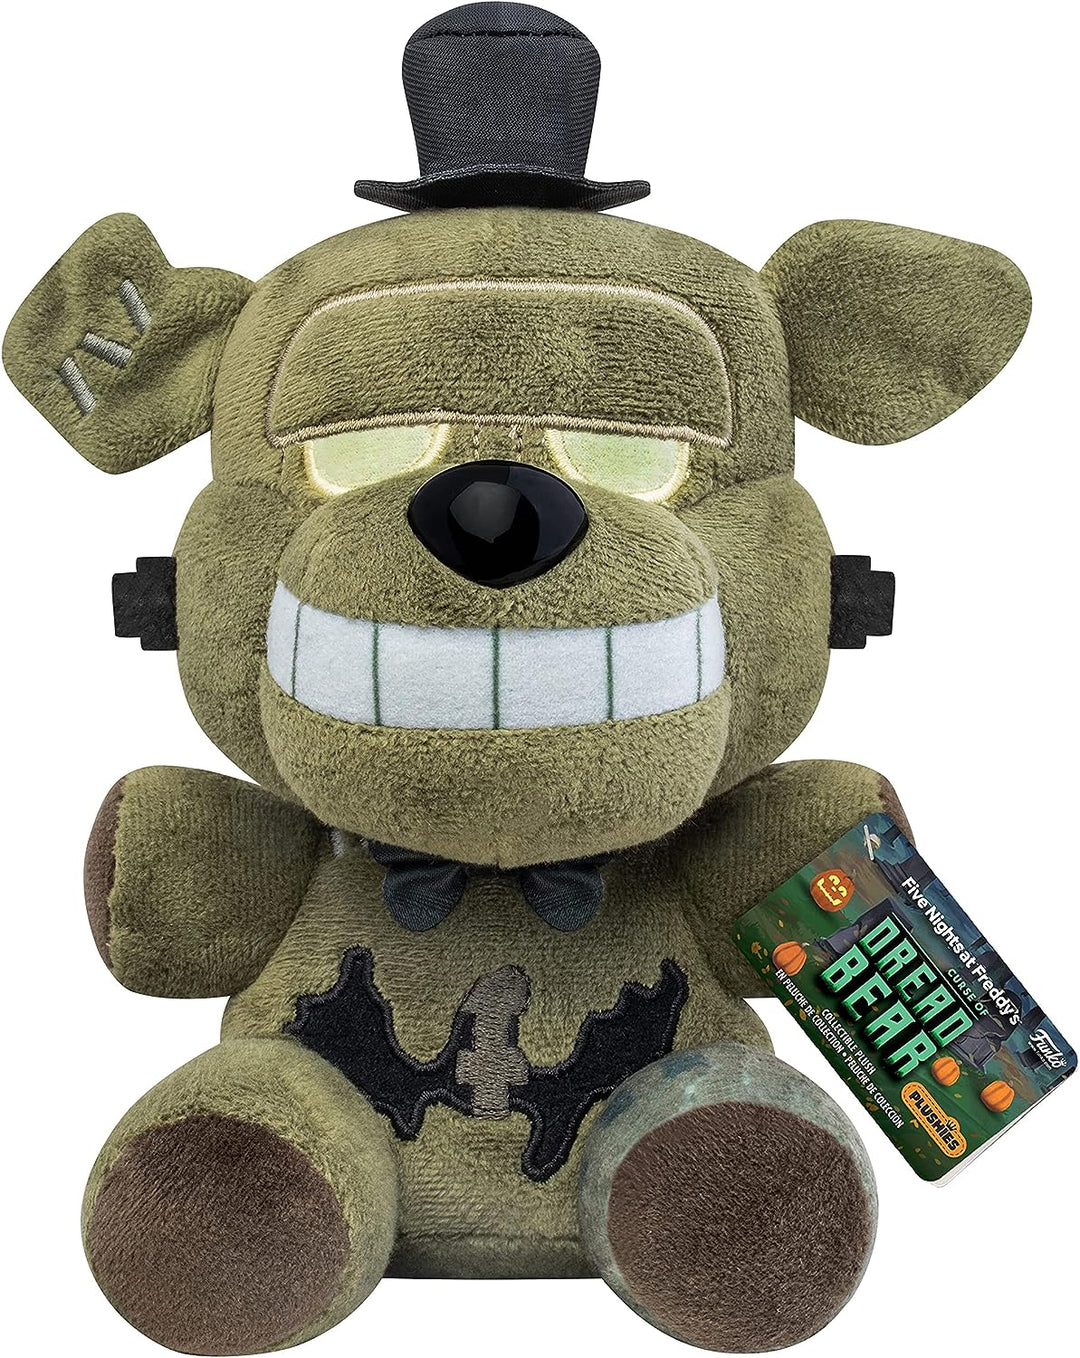 Funko Plush: Five Nights At Freddy's (FNAF) Dreadbear - Dreadbear - Collectable Soft Toy